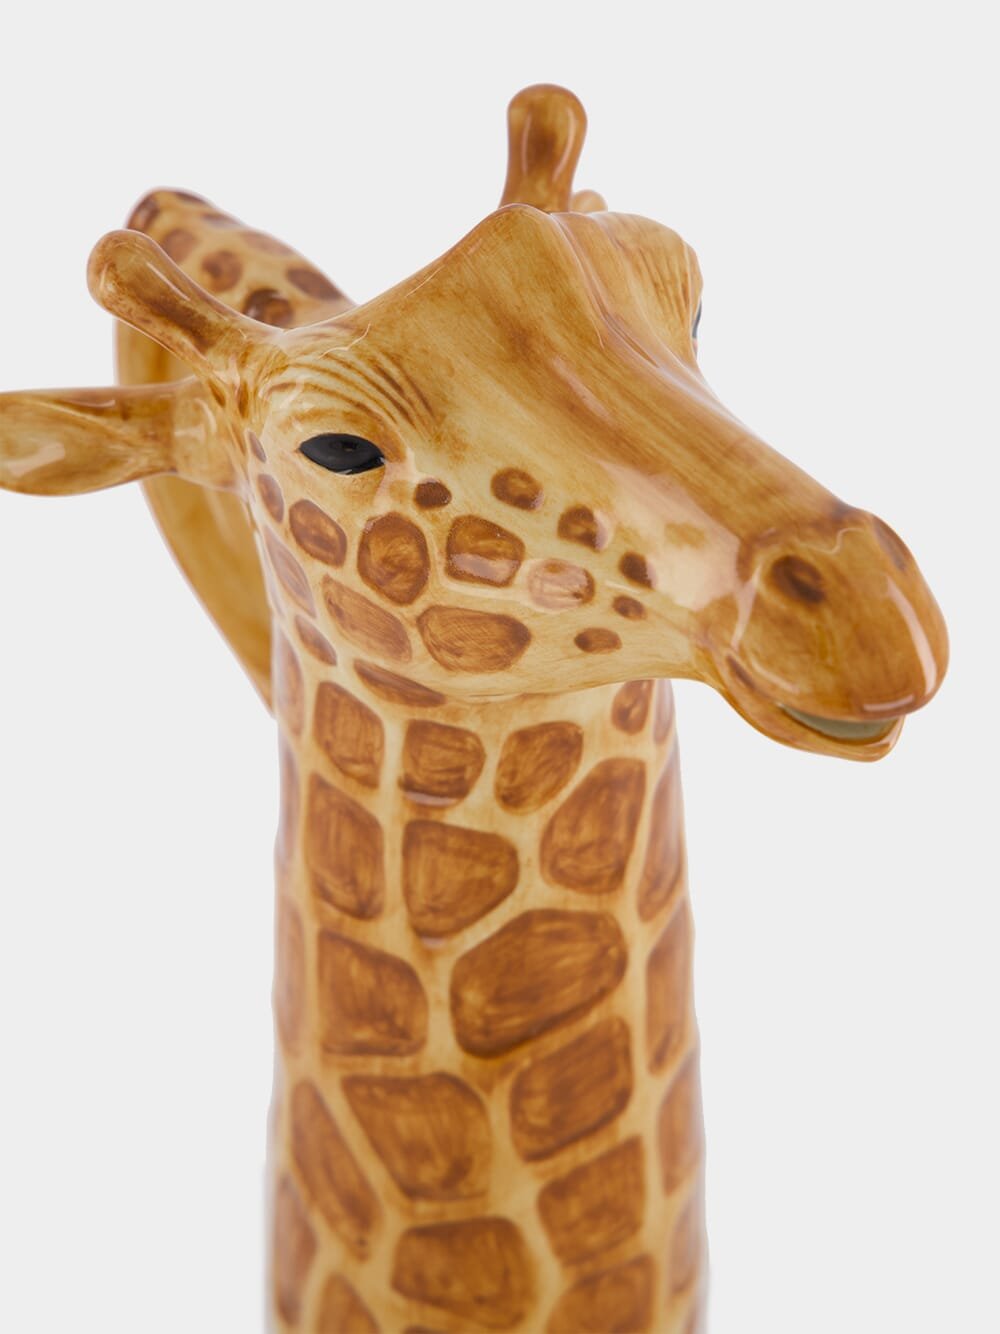 Quail CeramicsGiraffe Jug at Fashion Clinic